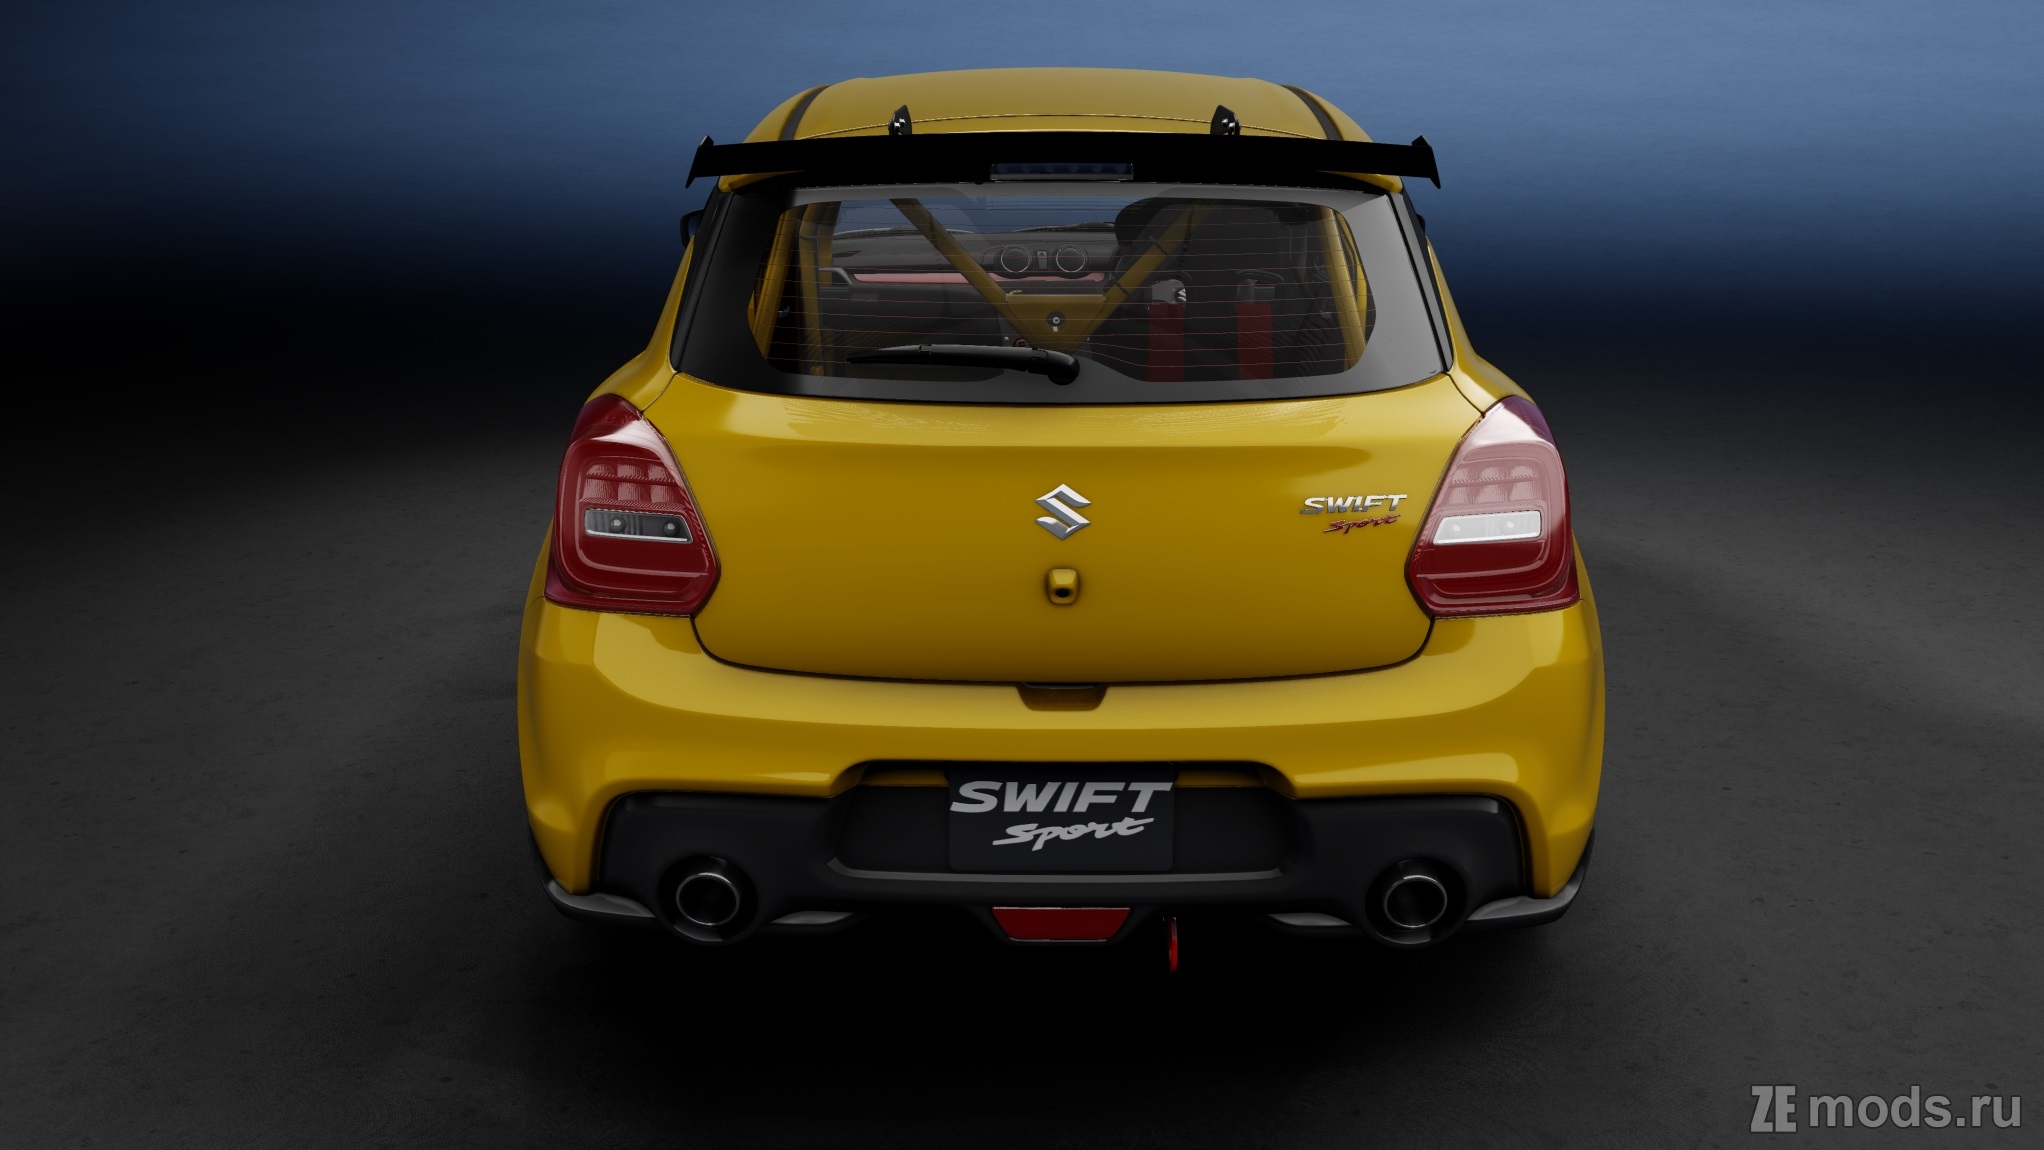 Мод Suzuki Swift Sport 2017 Track для Assetto Corsa